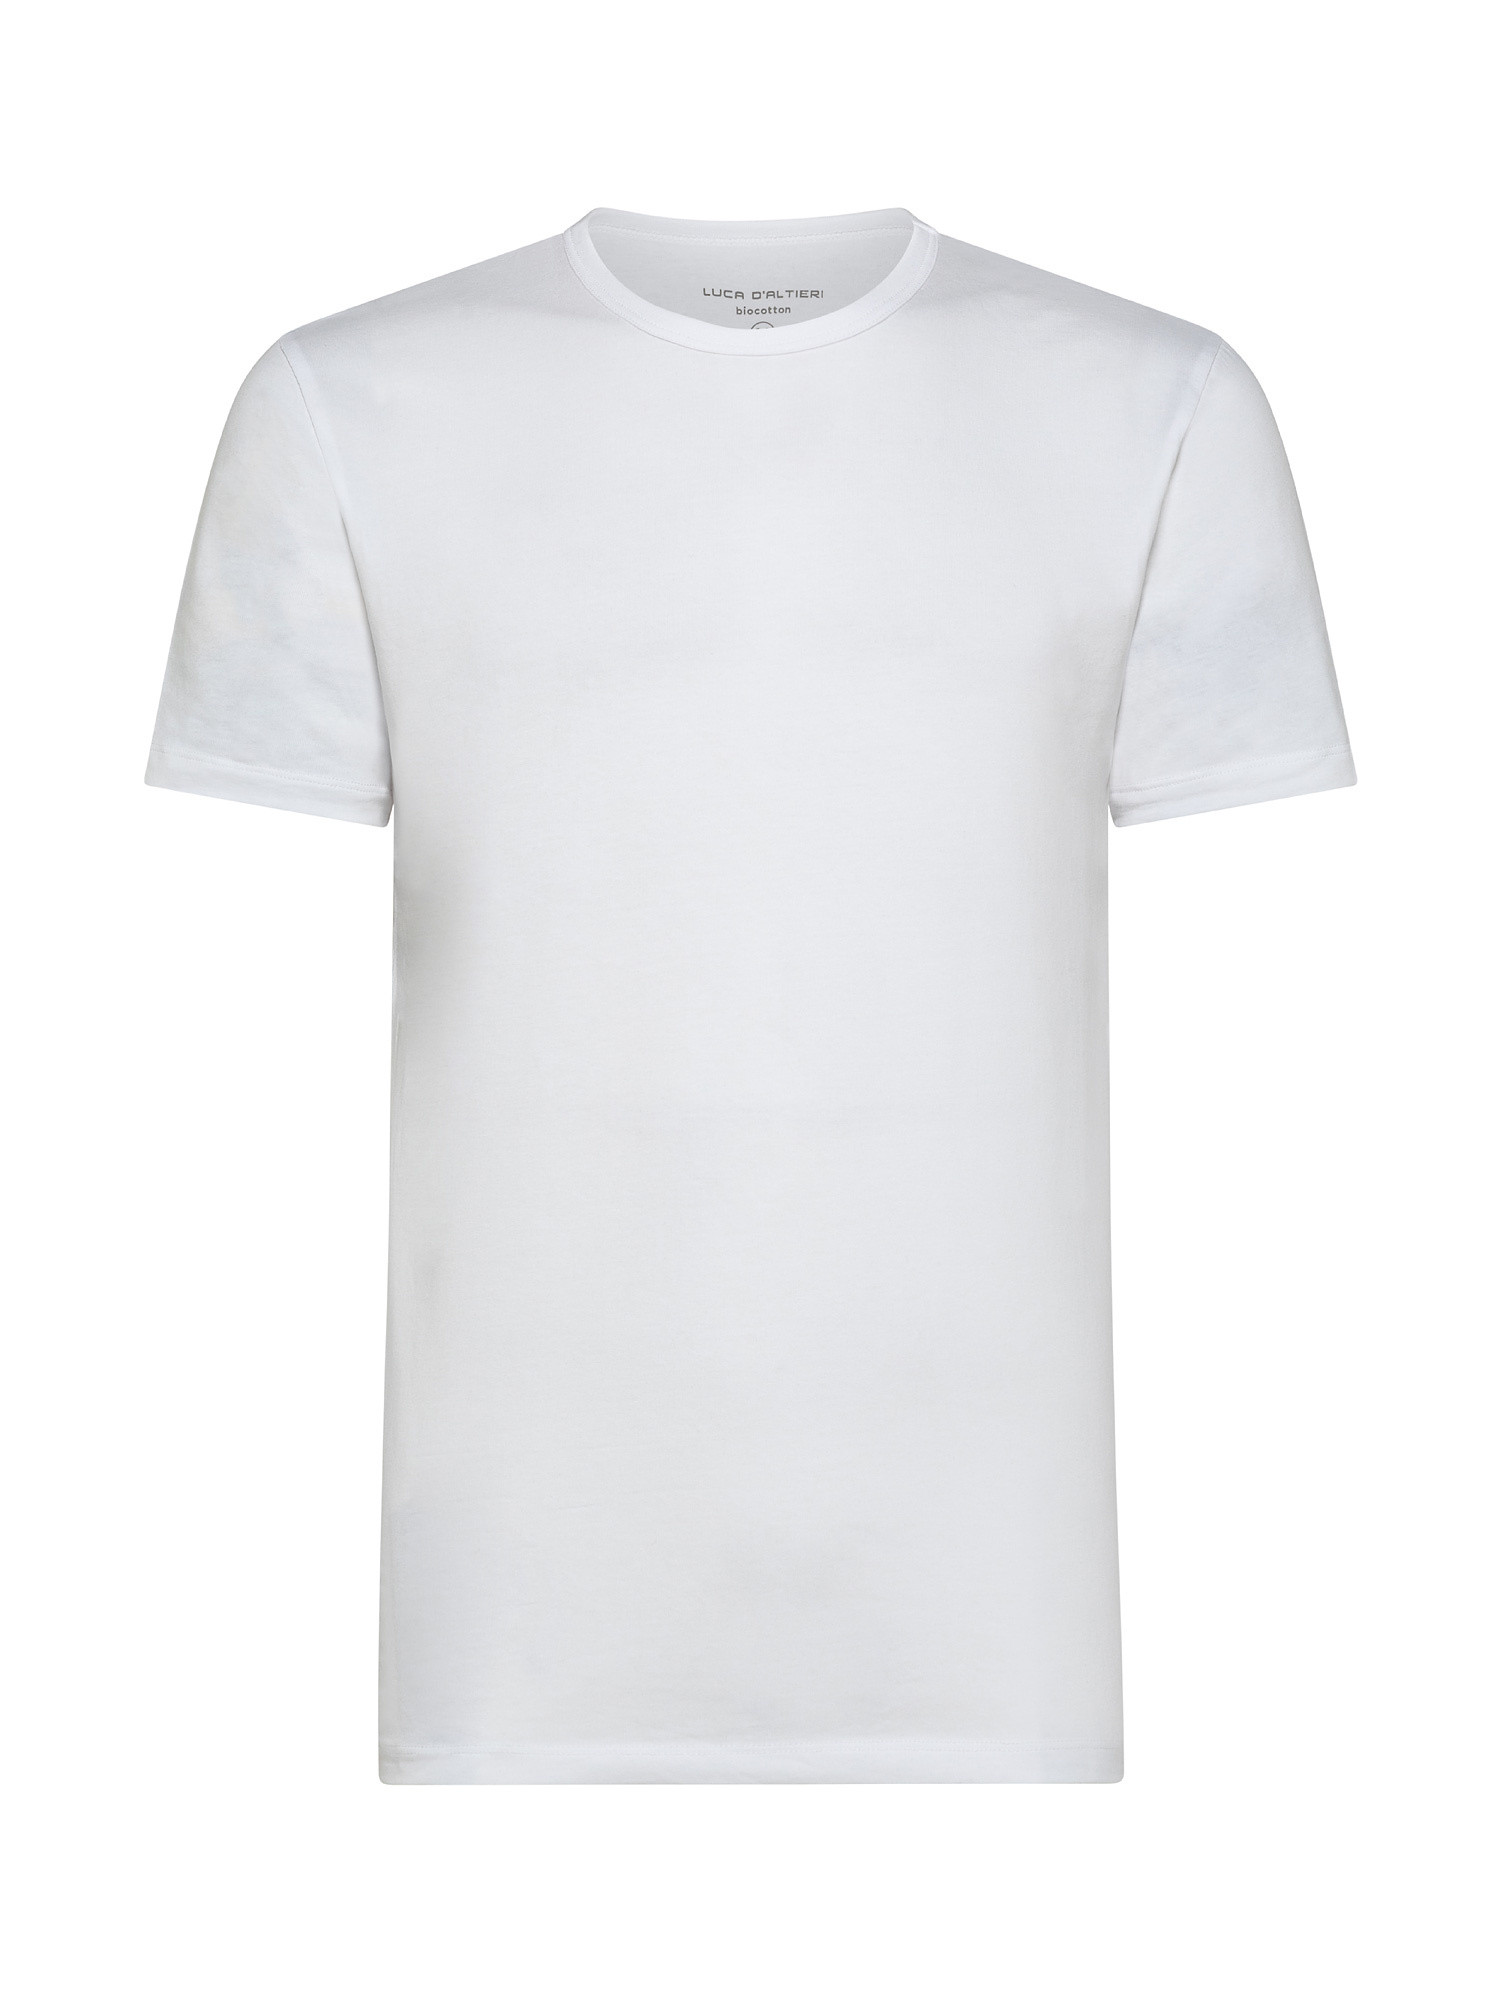 Set da 2 t-shirt, Bianco, large